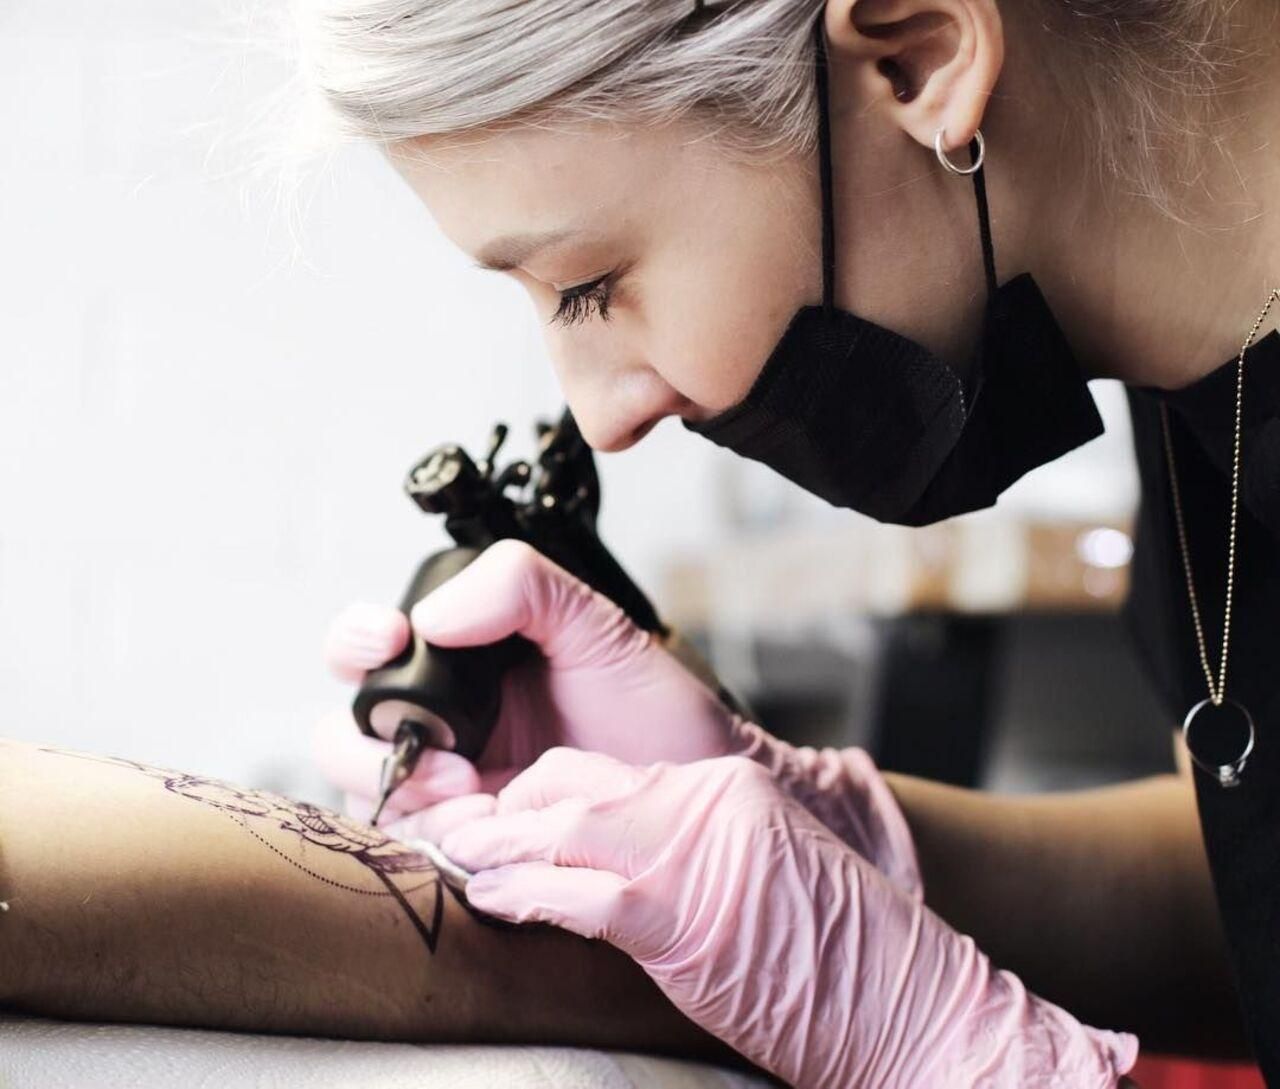 Які частини тіла найболючіші для татуювань: відповідь майстра